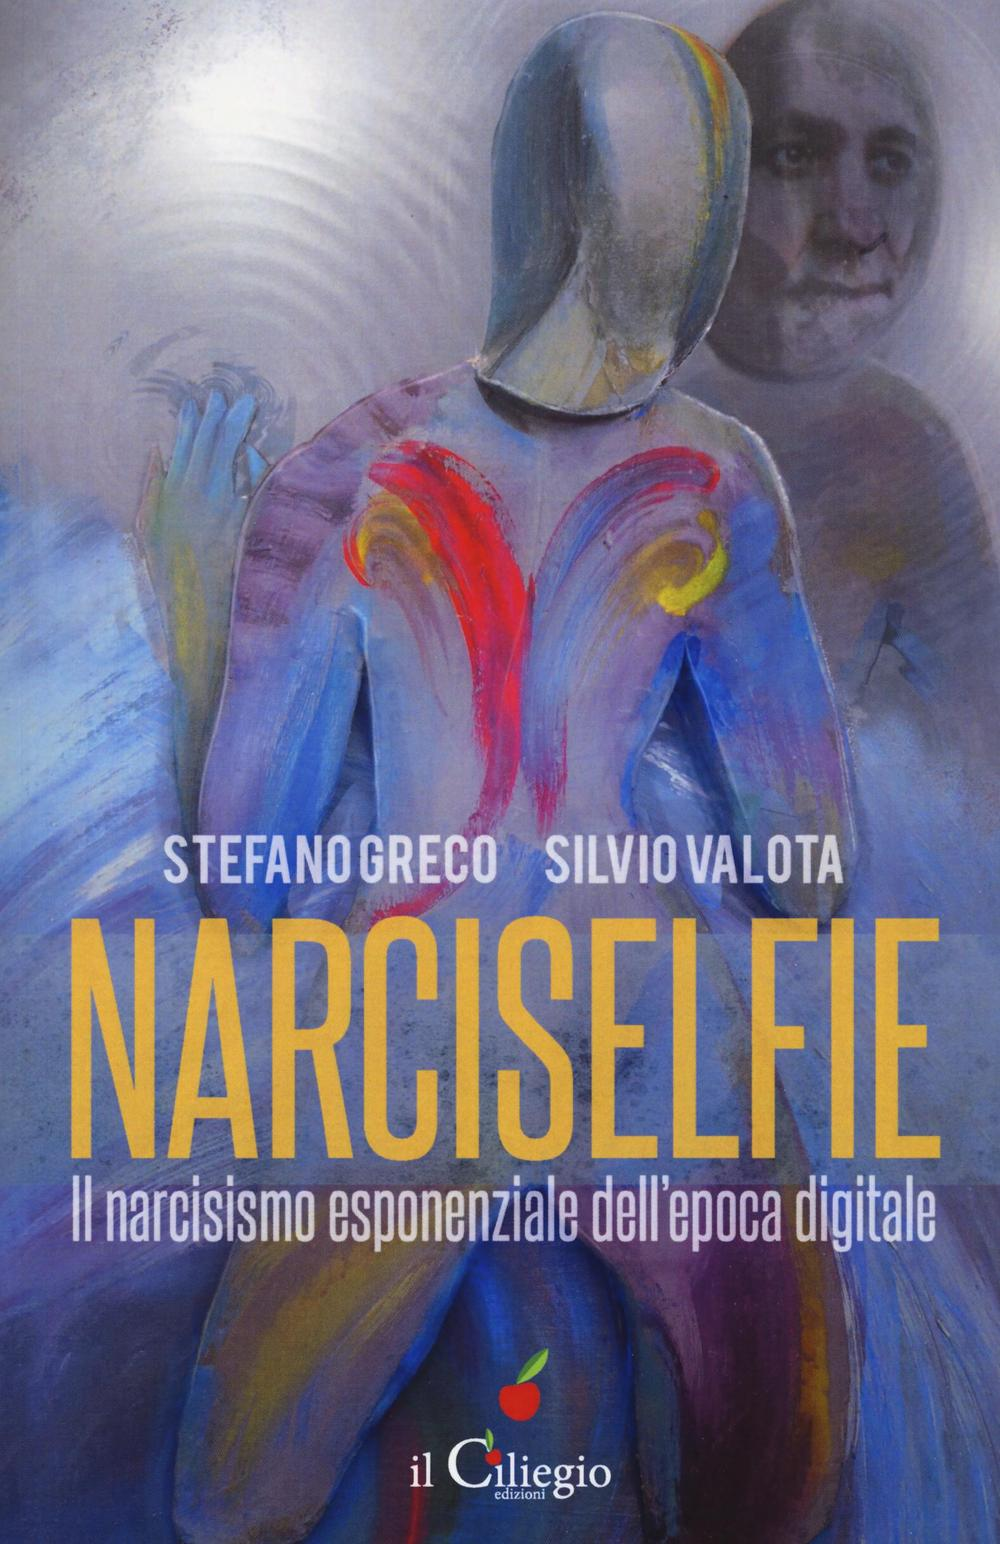 Image of Narciselfie. Il narcisismo esponenziale dell'epoca digitale